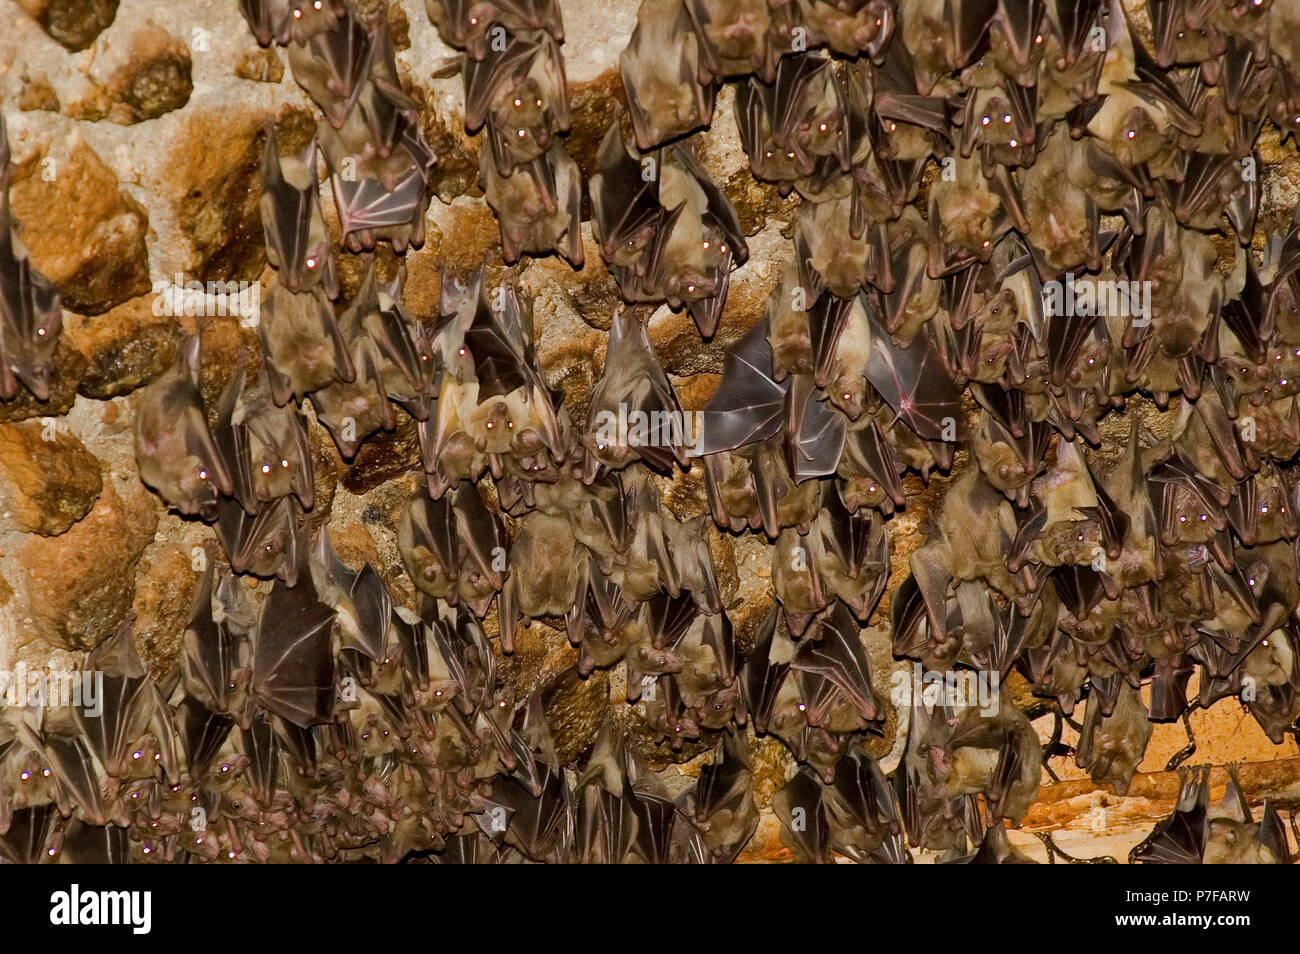 Colonie de chauve-souris reste dans une grotte Photo Stock - Alamy